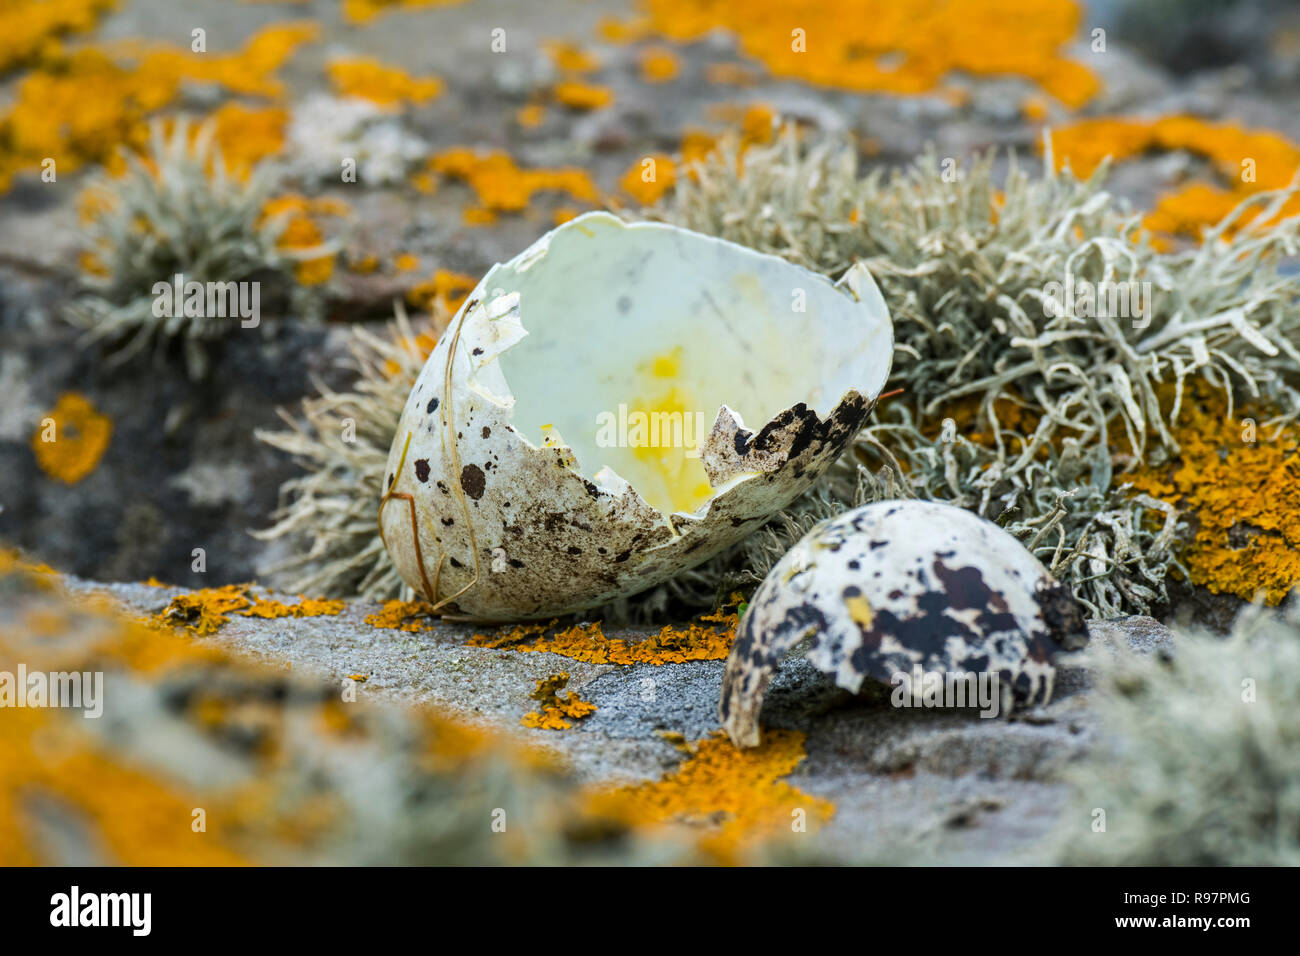 In realtà risaliva a prima di gusci di uova di razorbill (Alca torda) rotto e mangiato da aringa gabbiano o grande skua in primavera, Scotland, Regno Unito Foto Stock